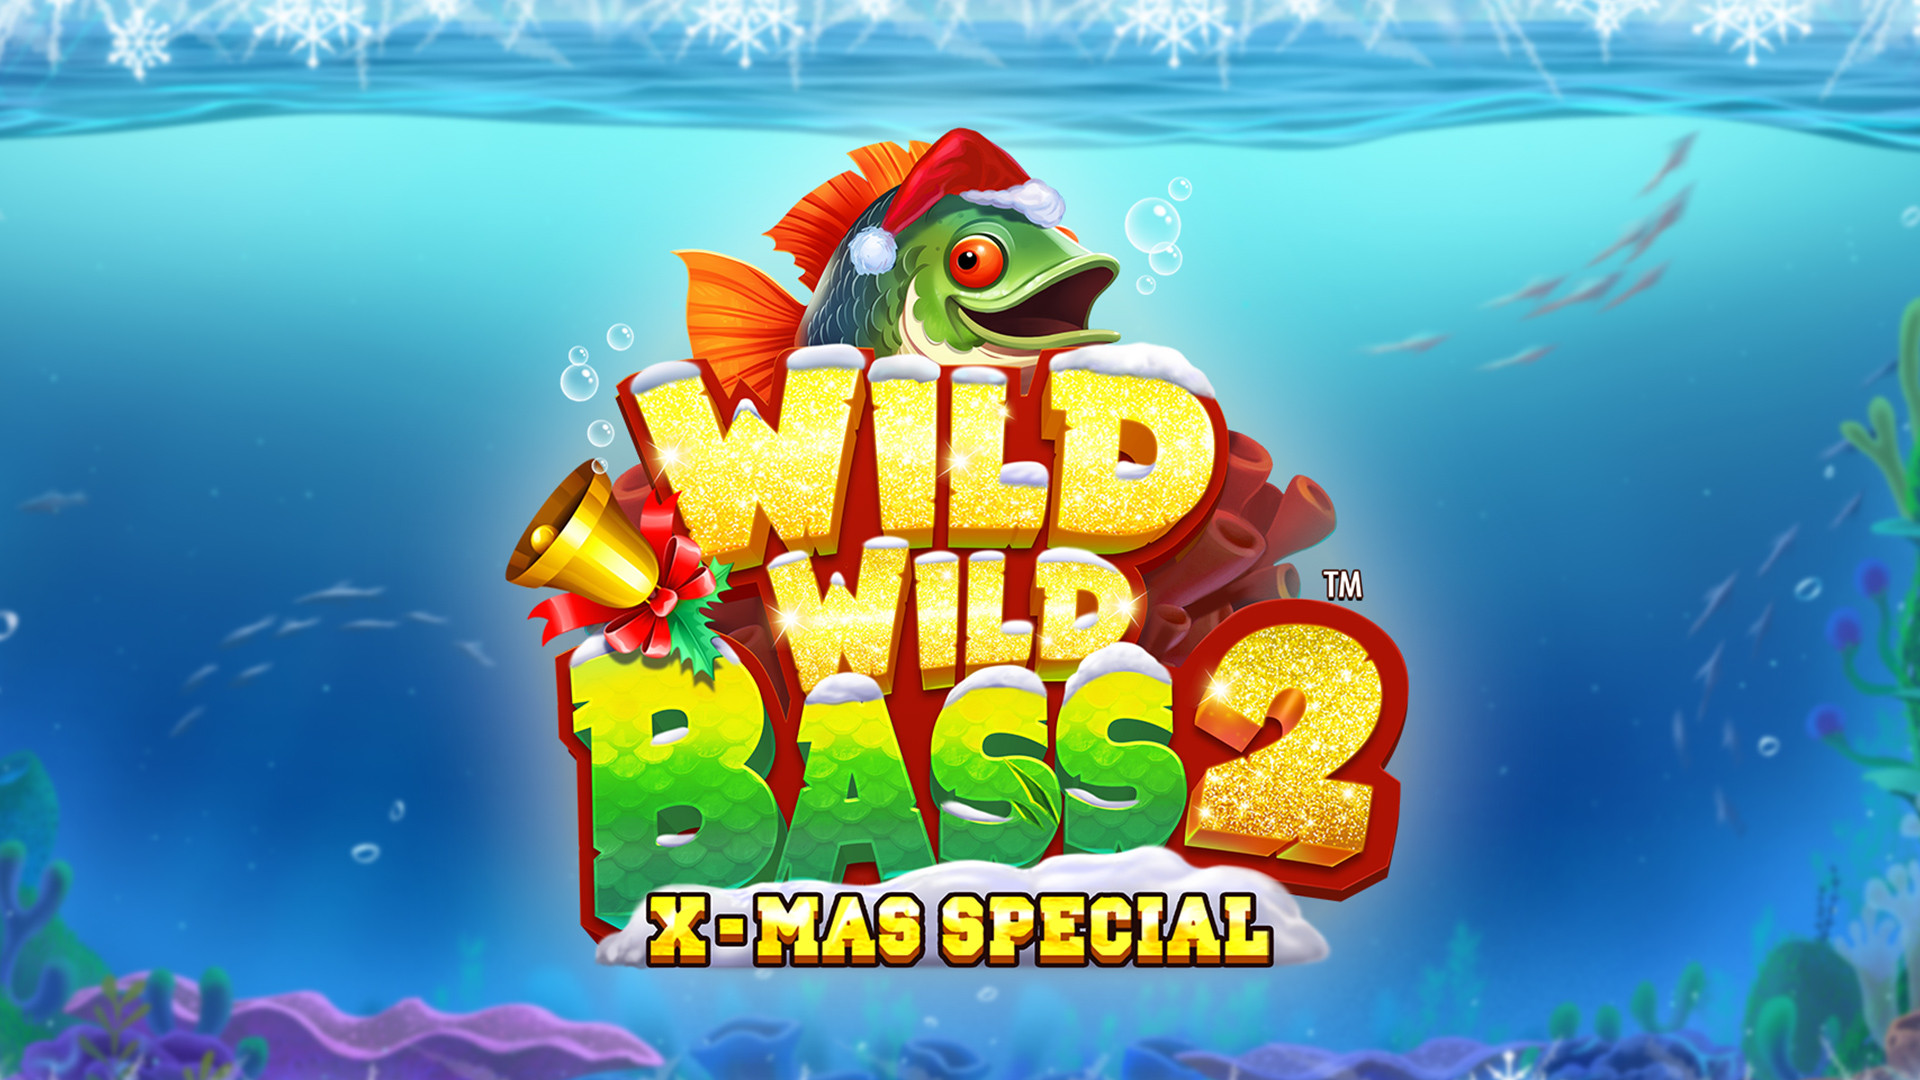 Wild Wild Bass 2 Xmas Special